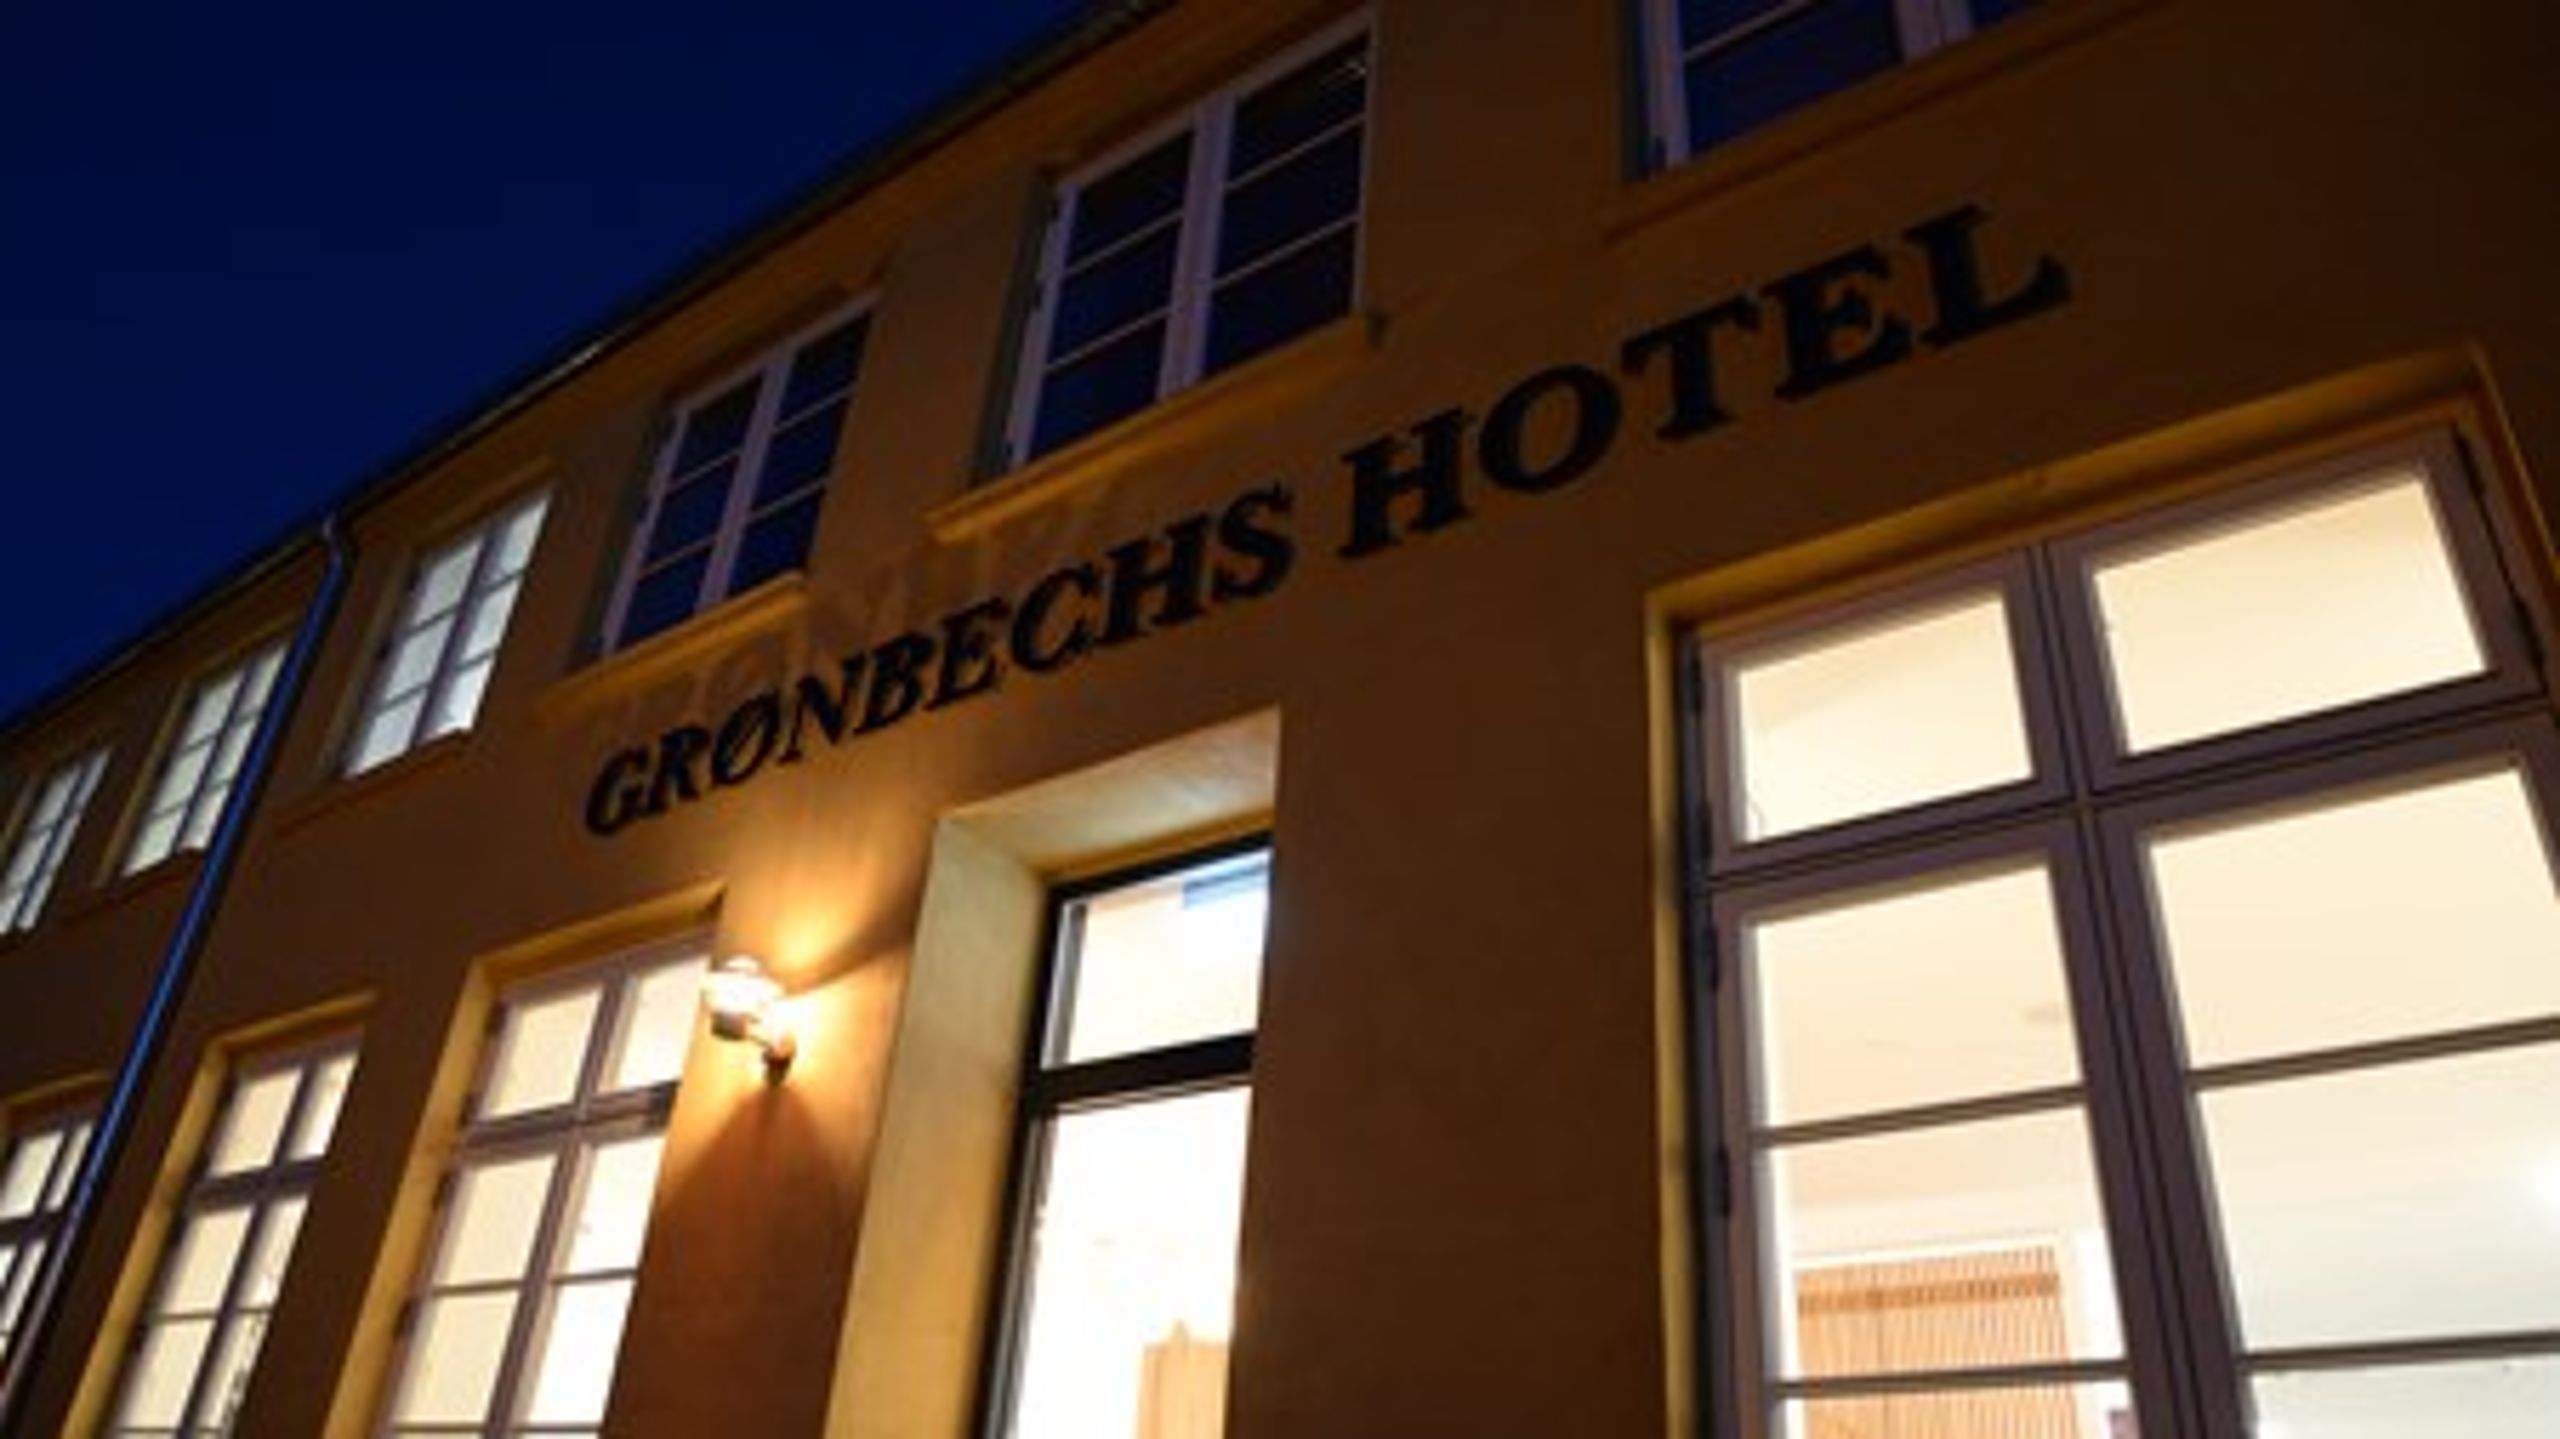 Grønbechs Hotel åbnede på Folkemødets første dag torsdag.&nbsp;